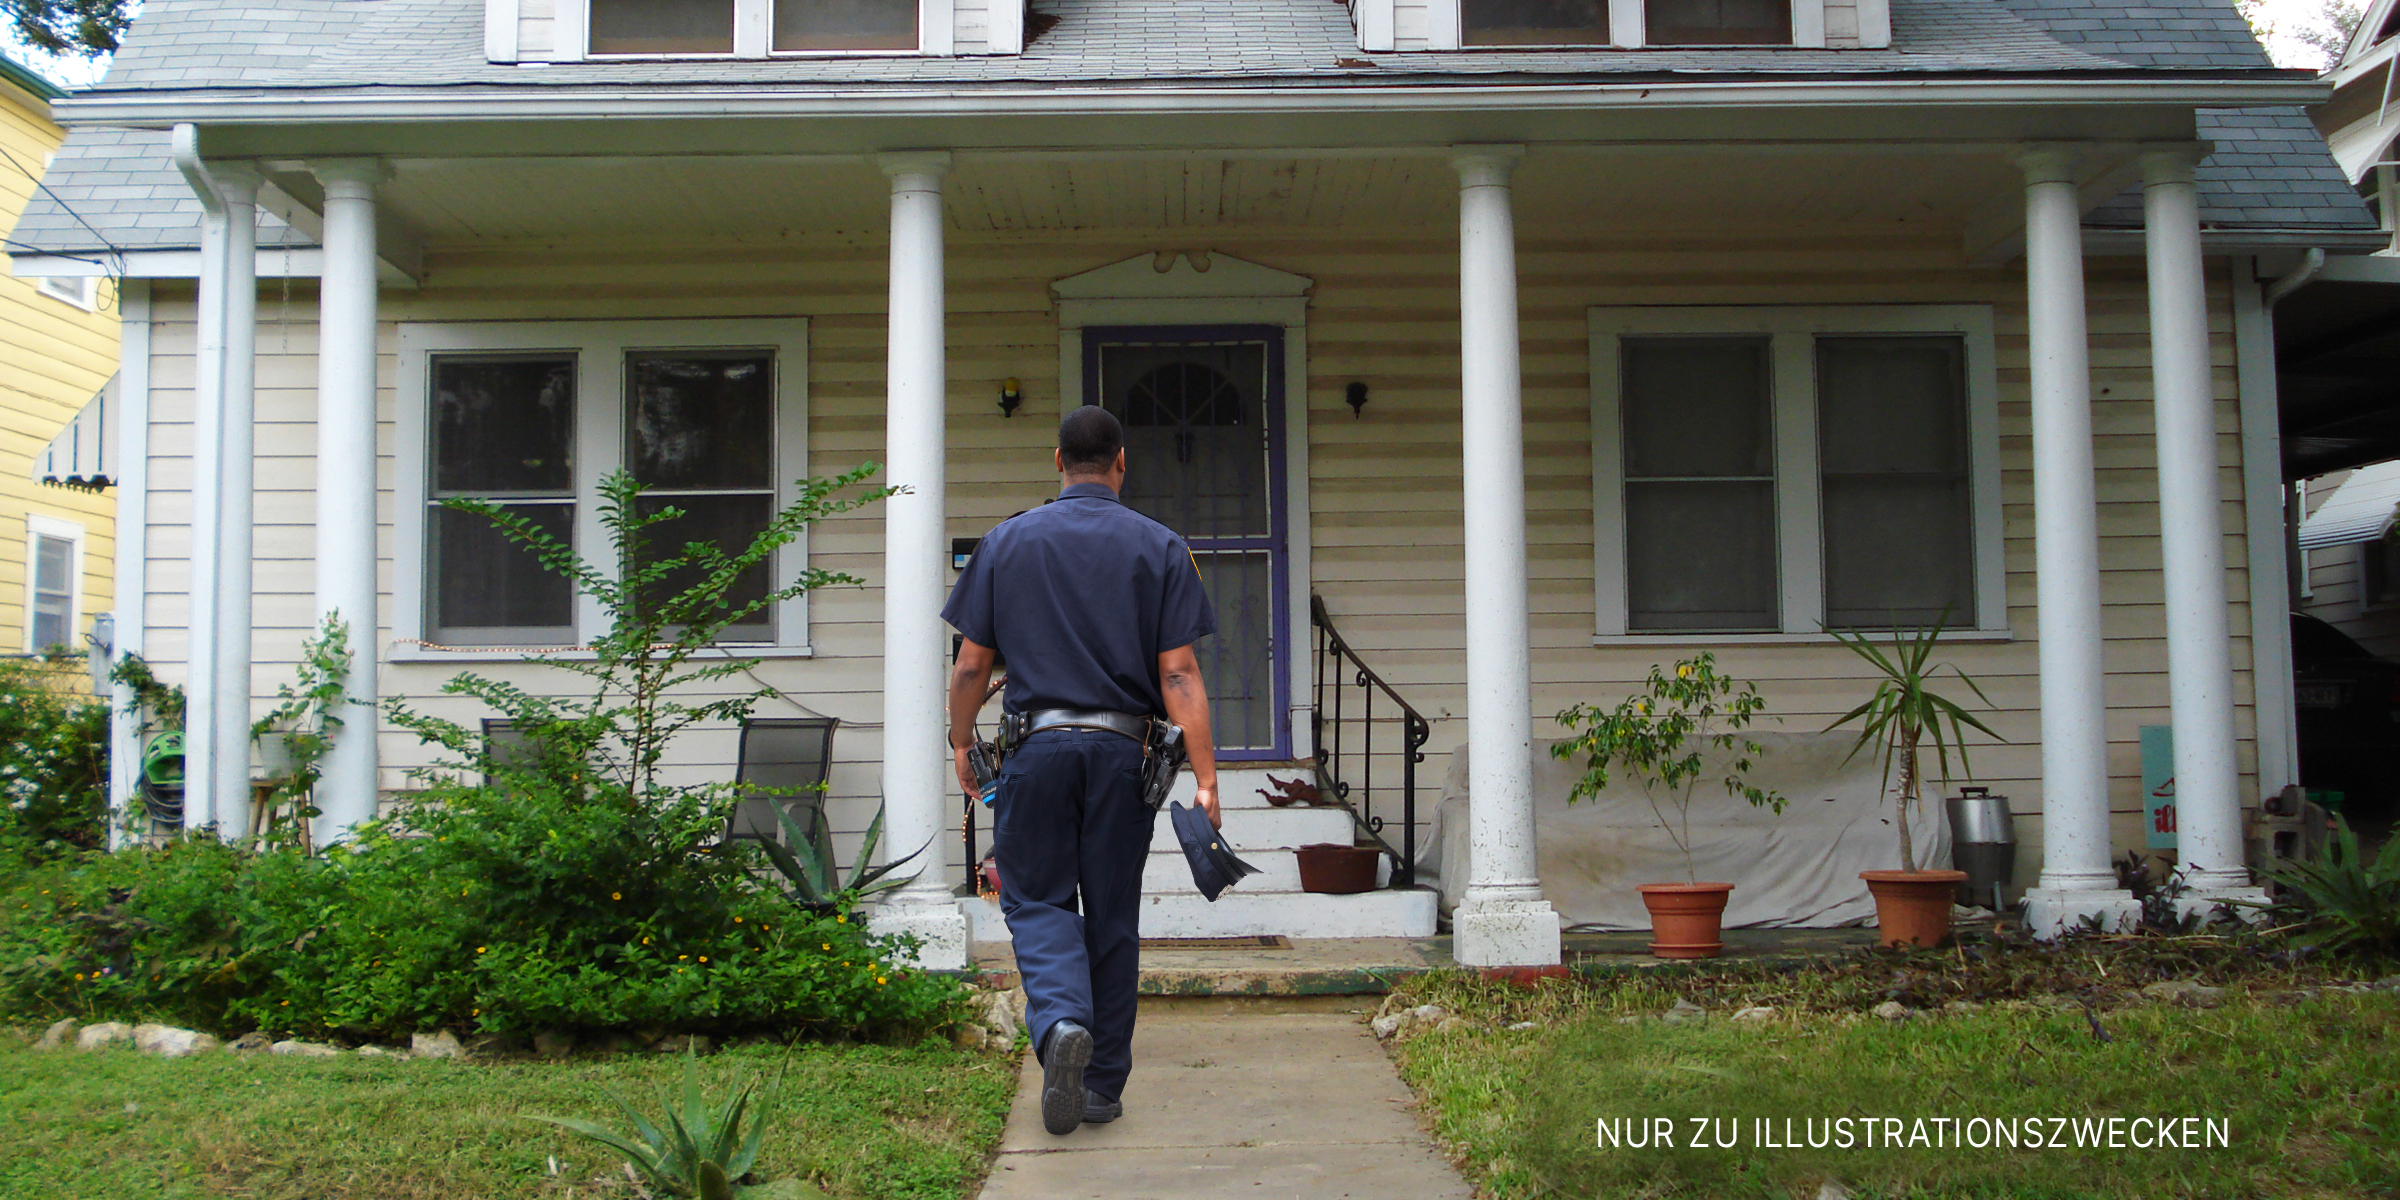 Polizist auf dem Weg zu einem Haus. | Quelle: Flickr / St_A_Sh (CC BY 2.0) & Shutterstock